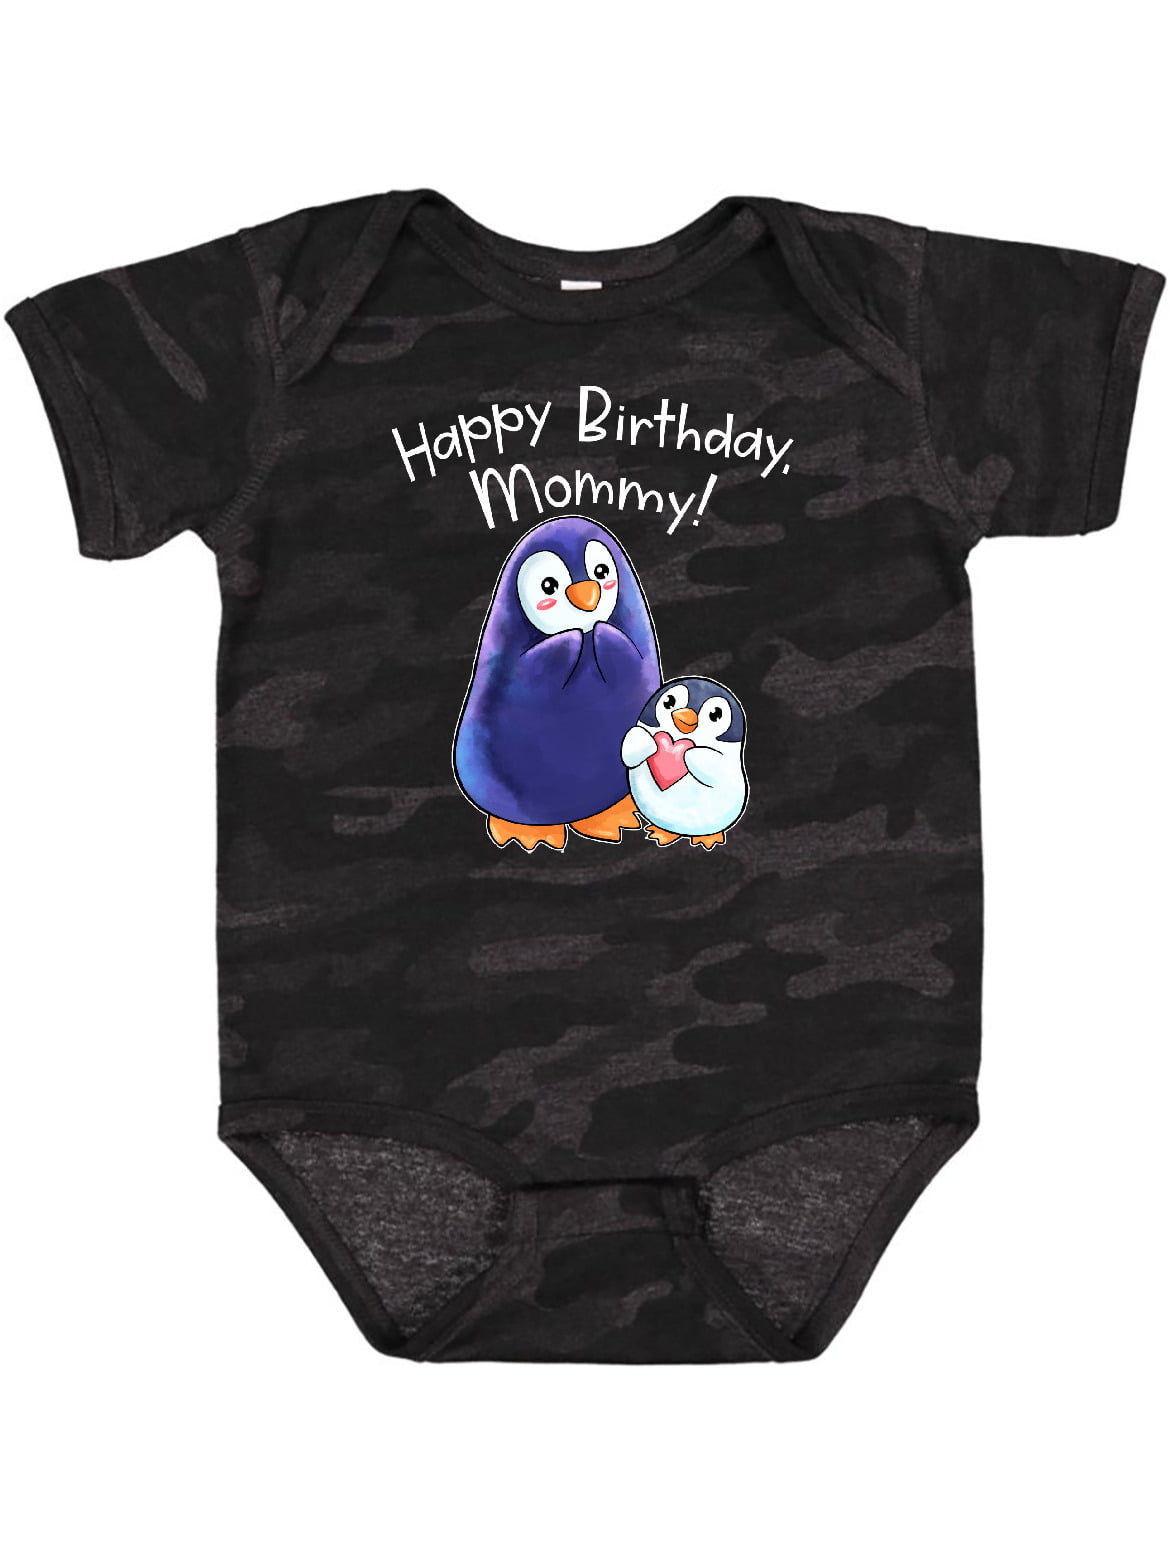 Happy Birthday Mummy Cute Boys and Girls Baby Vest Bodysuit